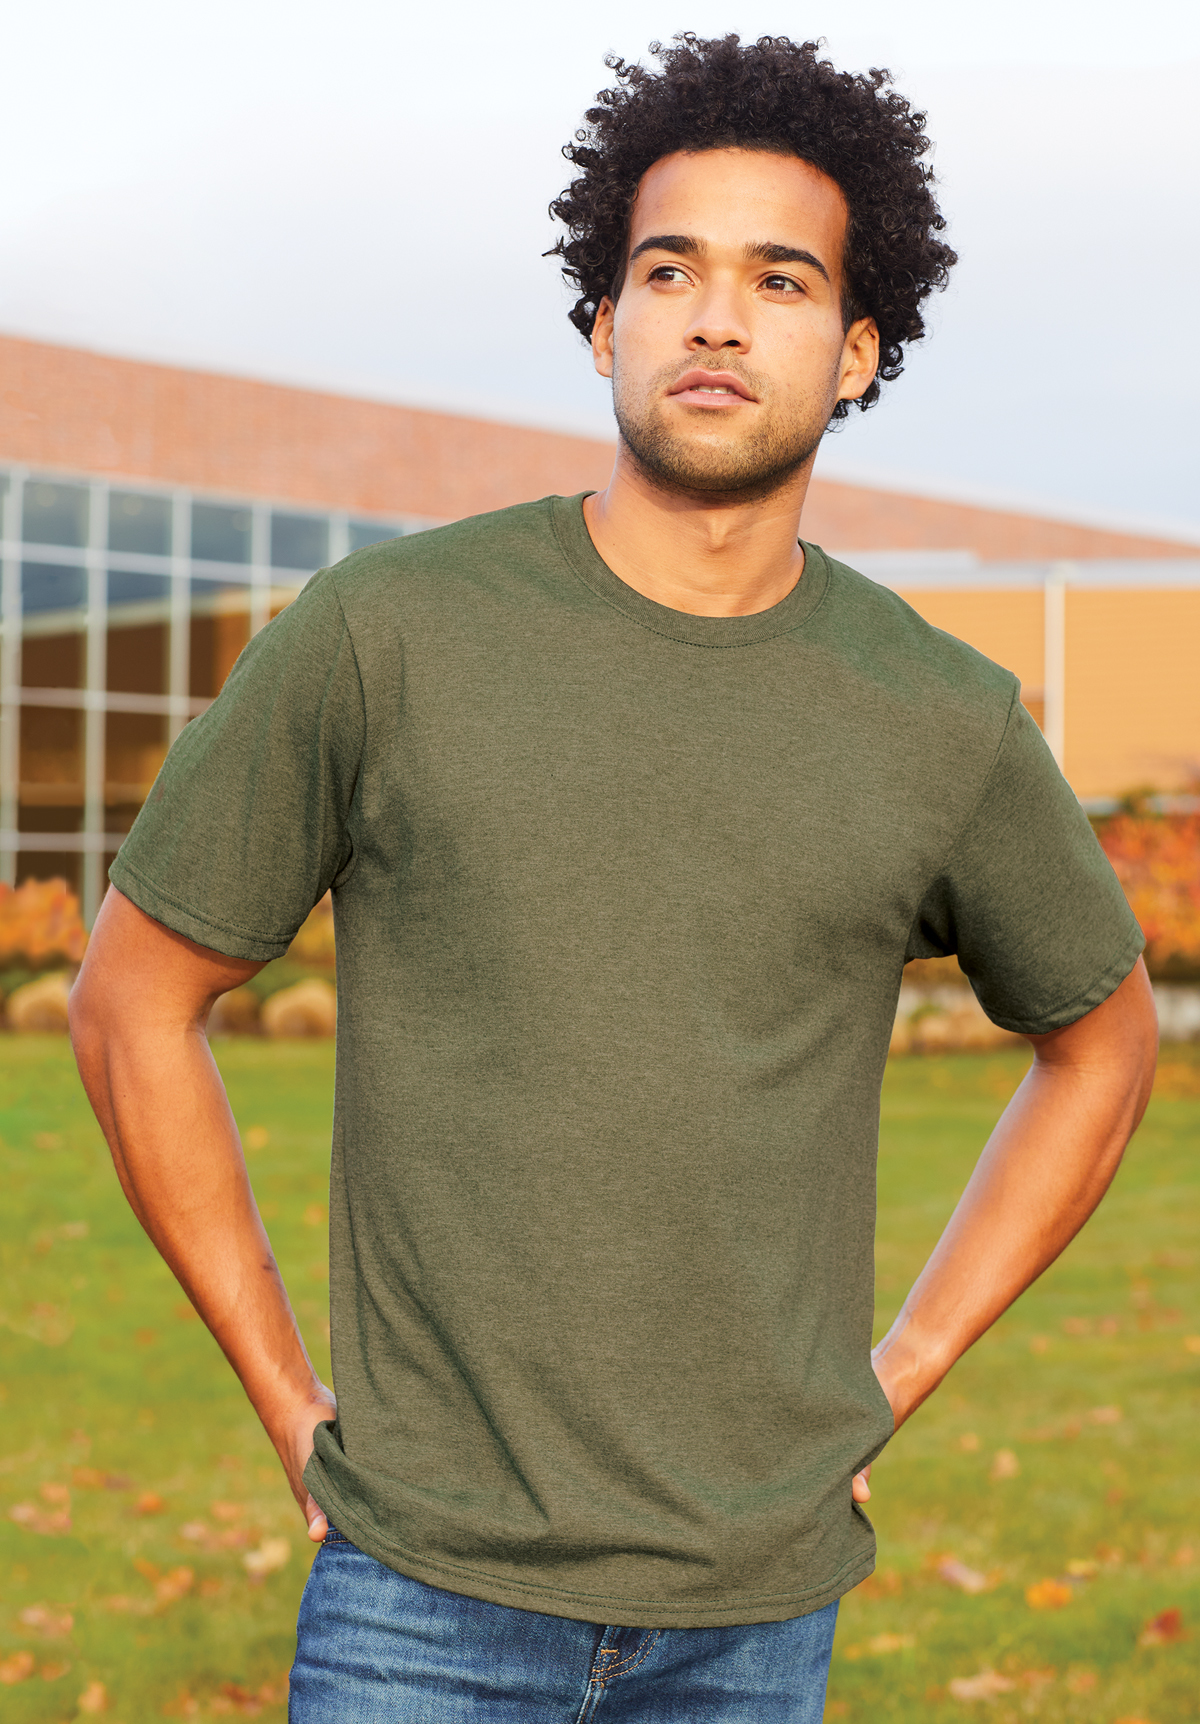 What is a Tri Blend T-Shirt